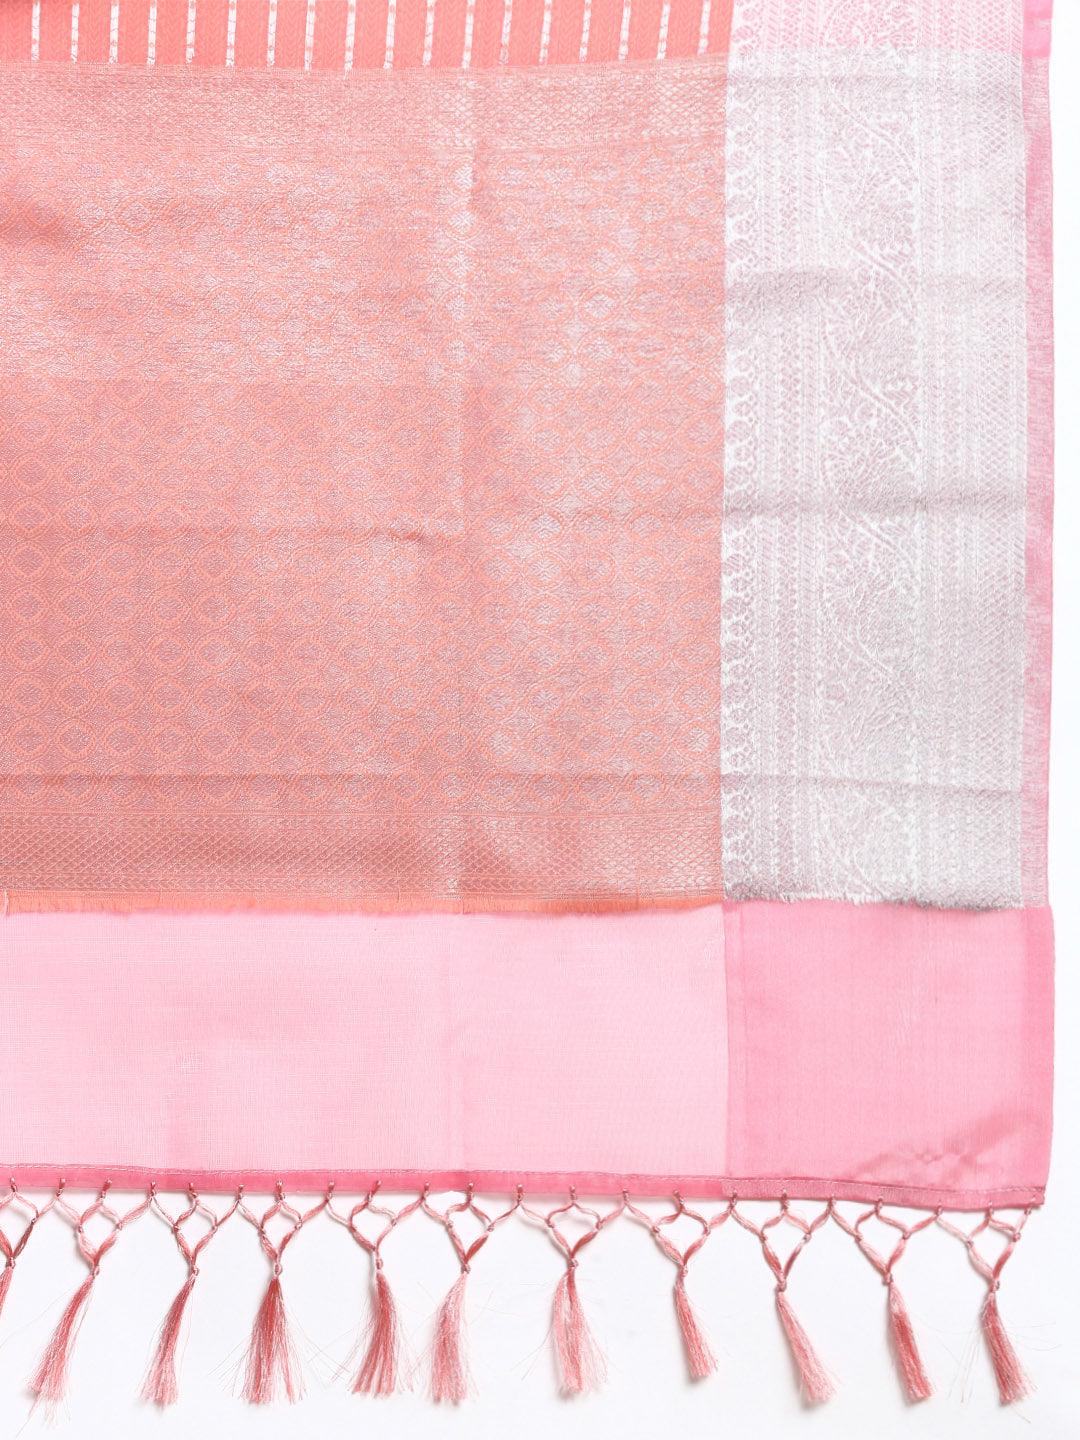 Semi Kora Cotton Allover Design Saree Pink with Silver Zari Border SKC02-Zari view